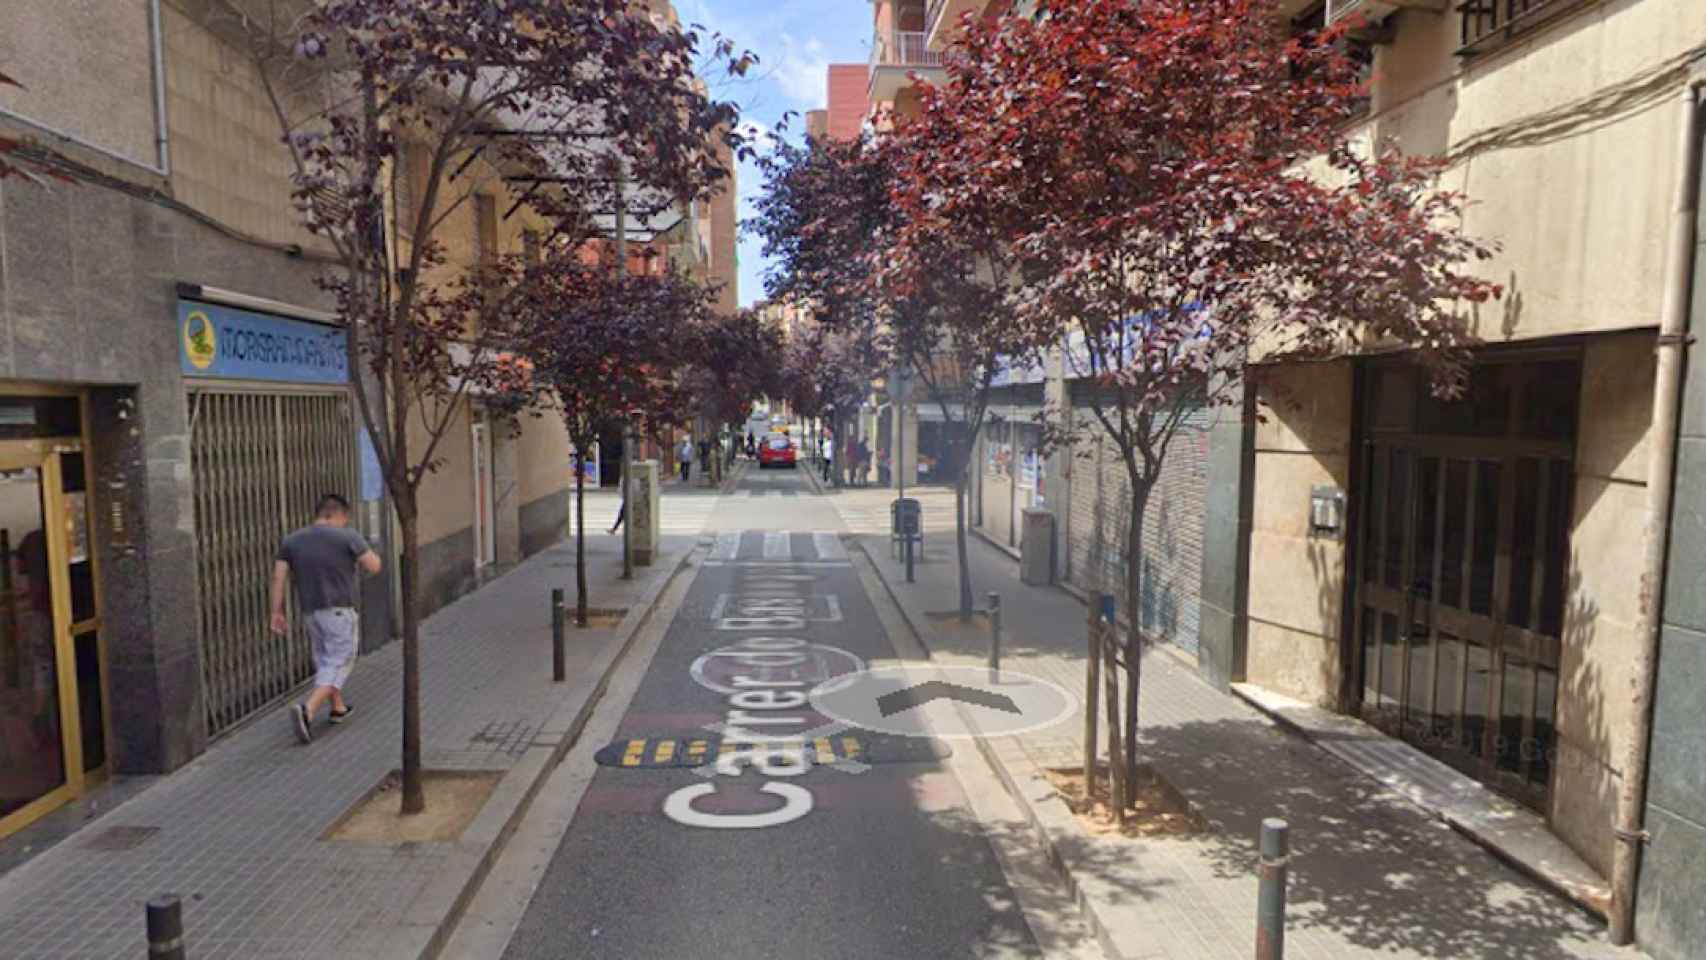 Calle del distrito de Sants-Montjuïc en la que se ha producido un apuñalamiento / GOOGLE MAPS